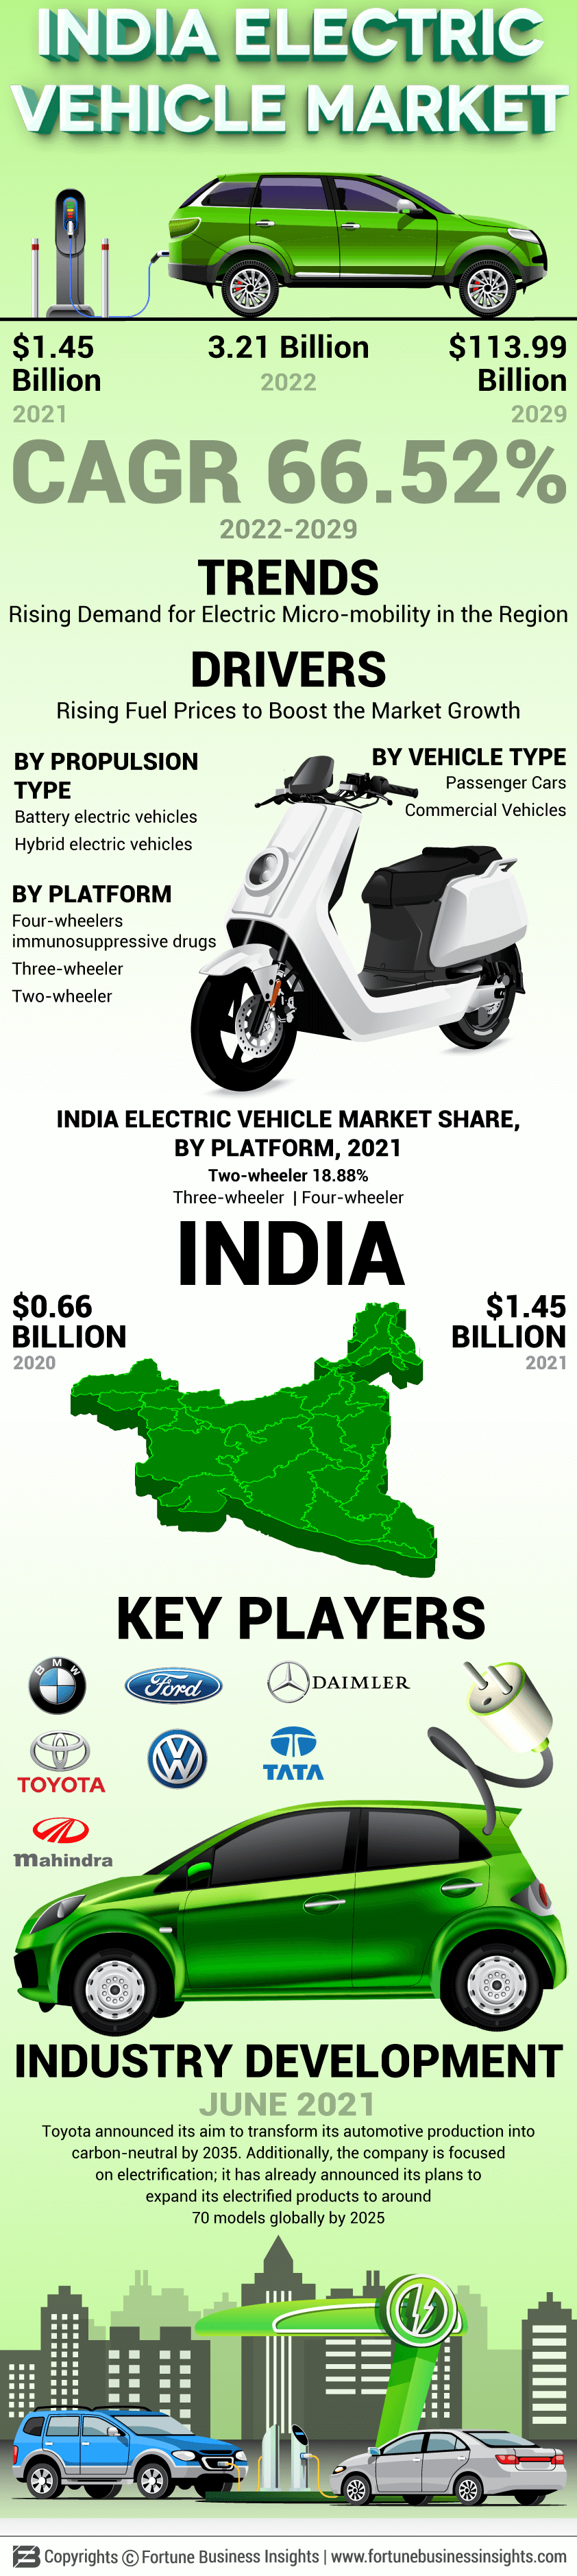 India Electric Vehicle Market